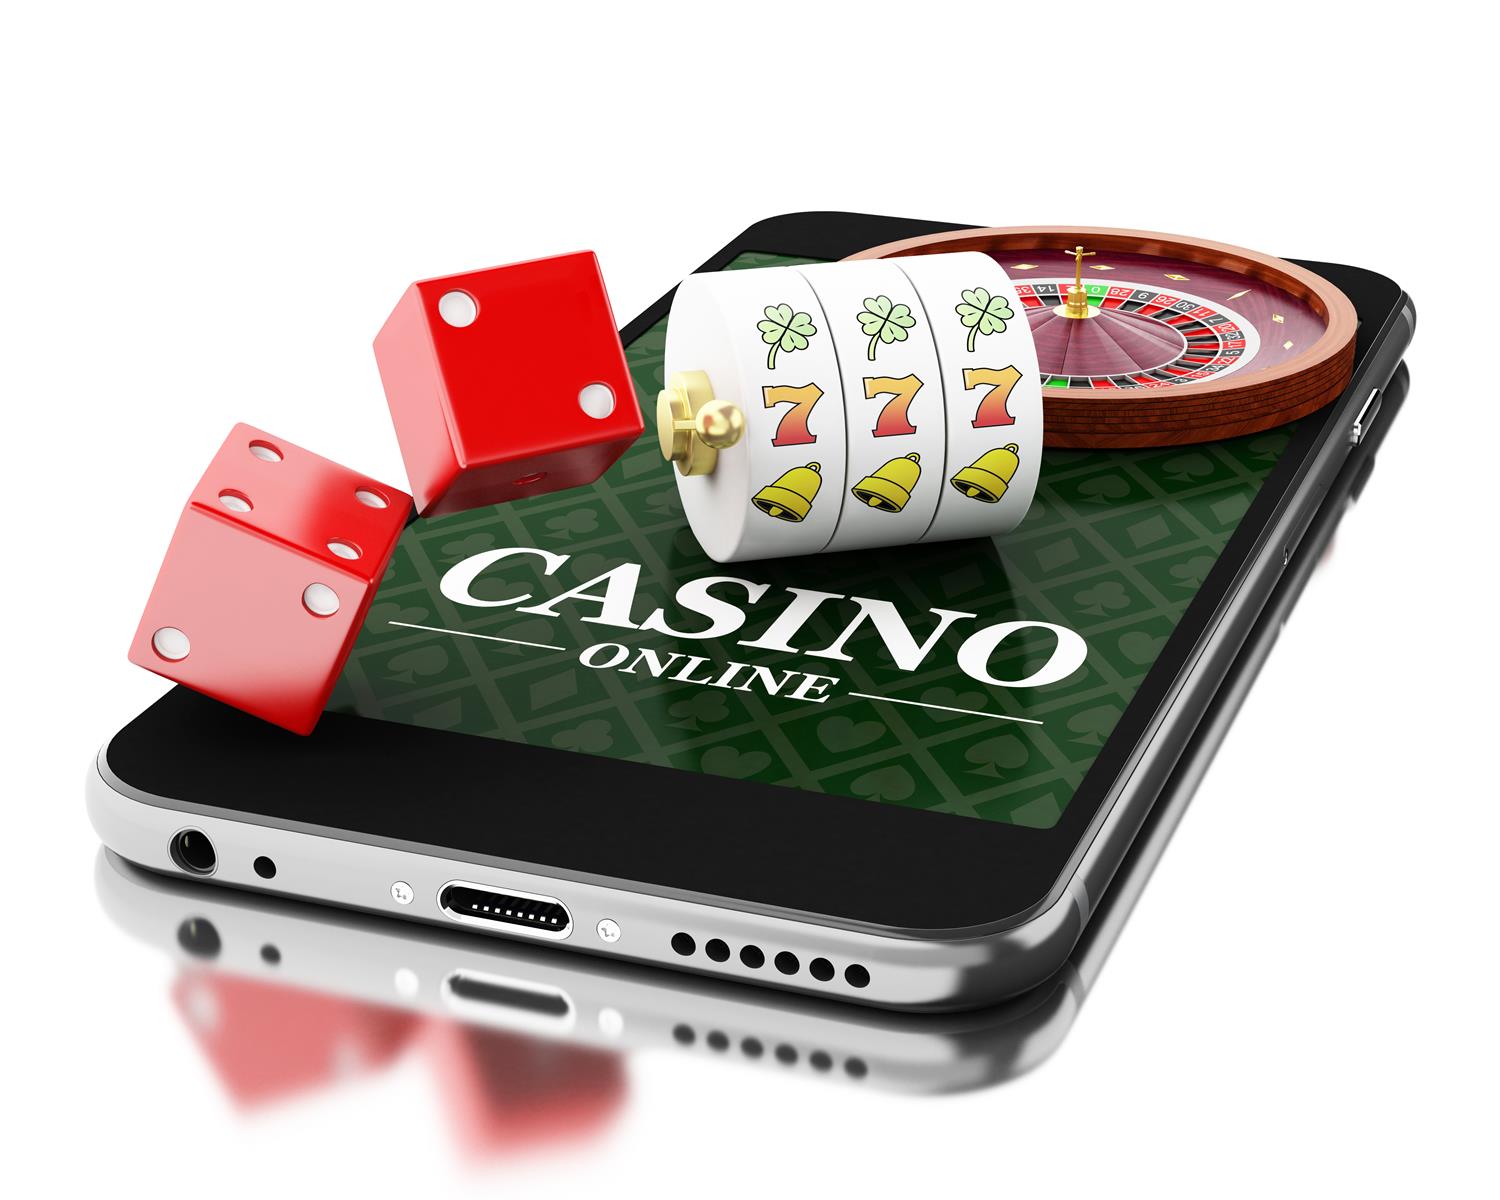 Den utallige hemmeligheten til å mestre casino verdensnyheter  på bare 3 dager